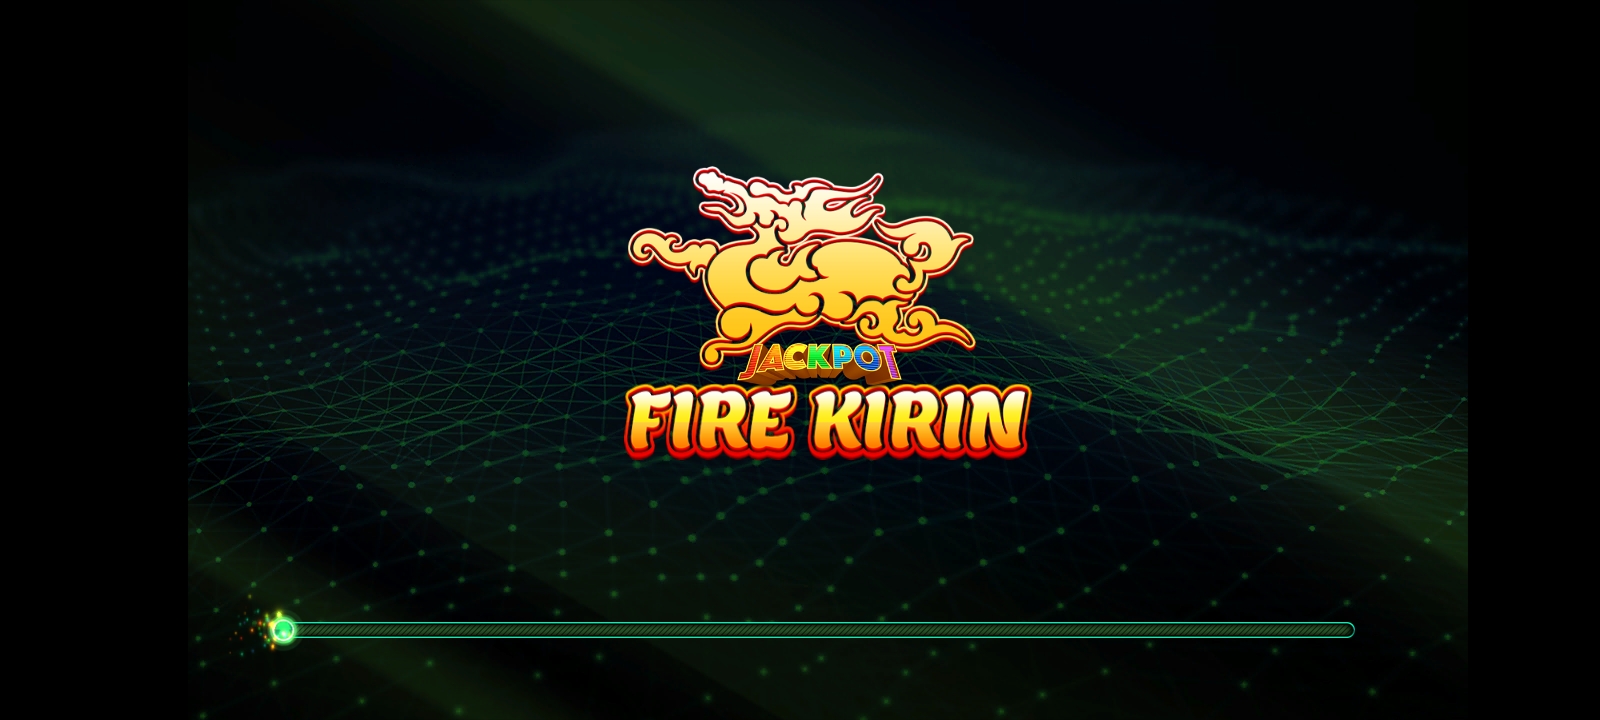 firekirin app download